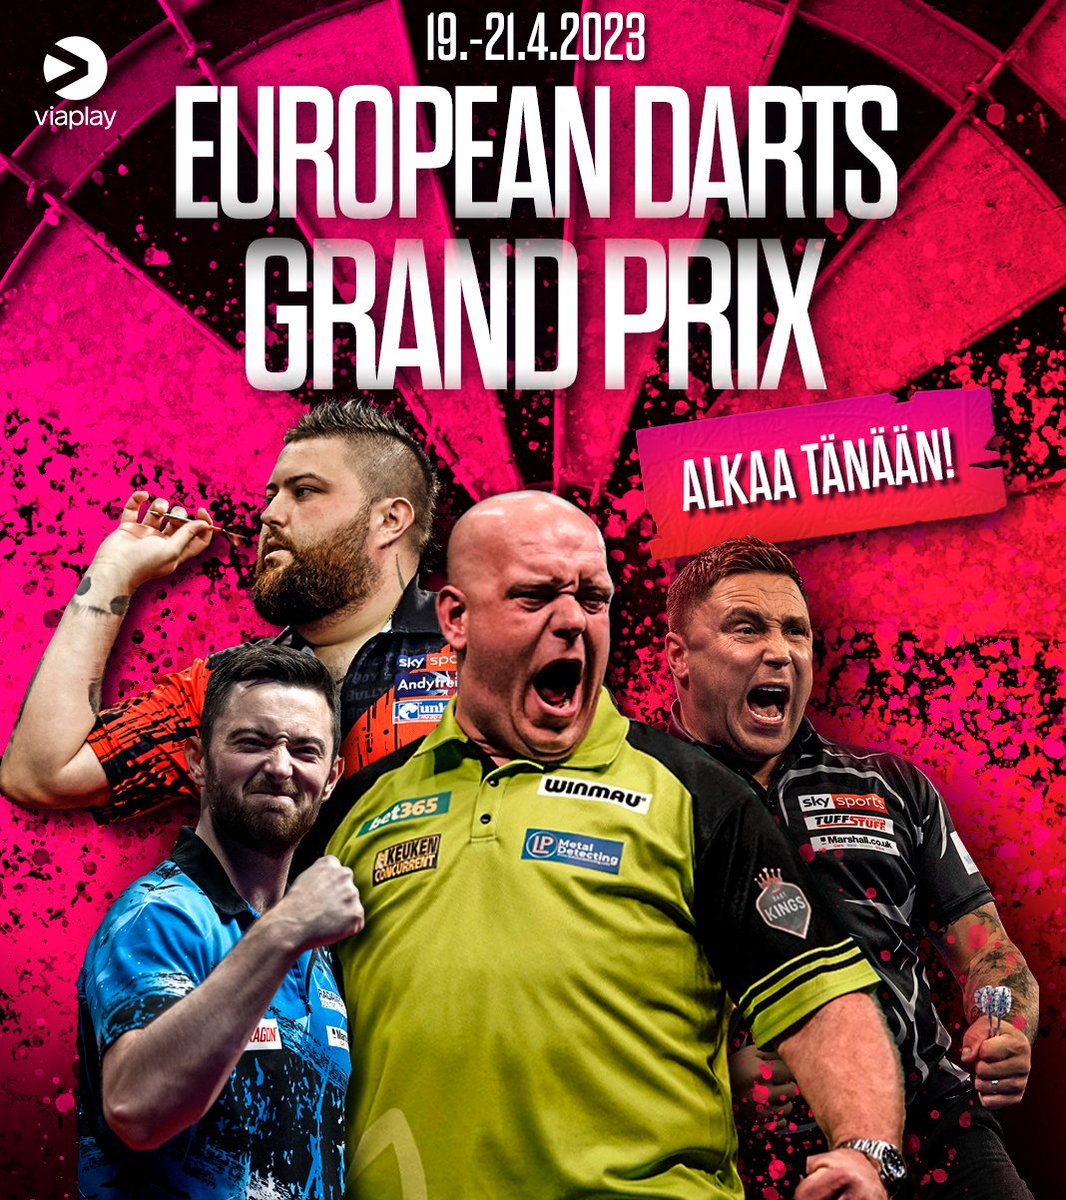 European Darts Grand Prix käynnistyy tänään iltapäiväsessiolla kello 14:00 ja tikat lentävät aina sunnuntaihin saakka! 🎯

#dartsfi